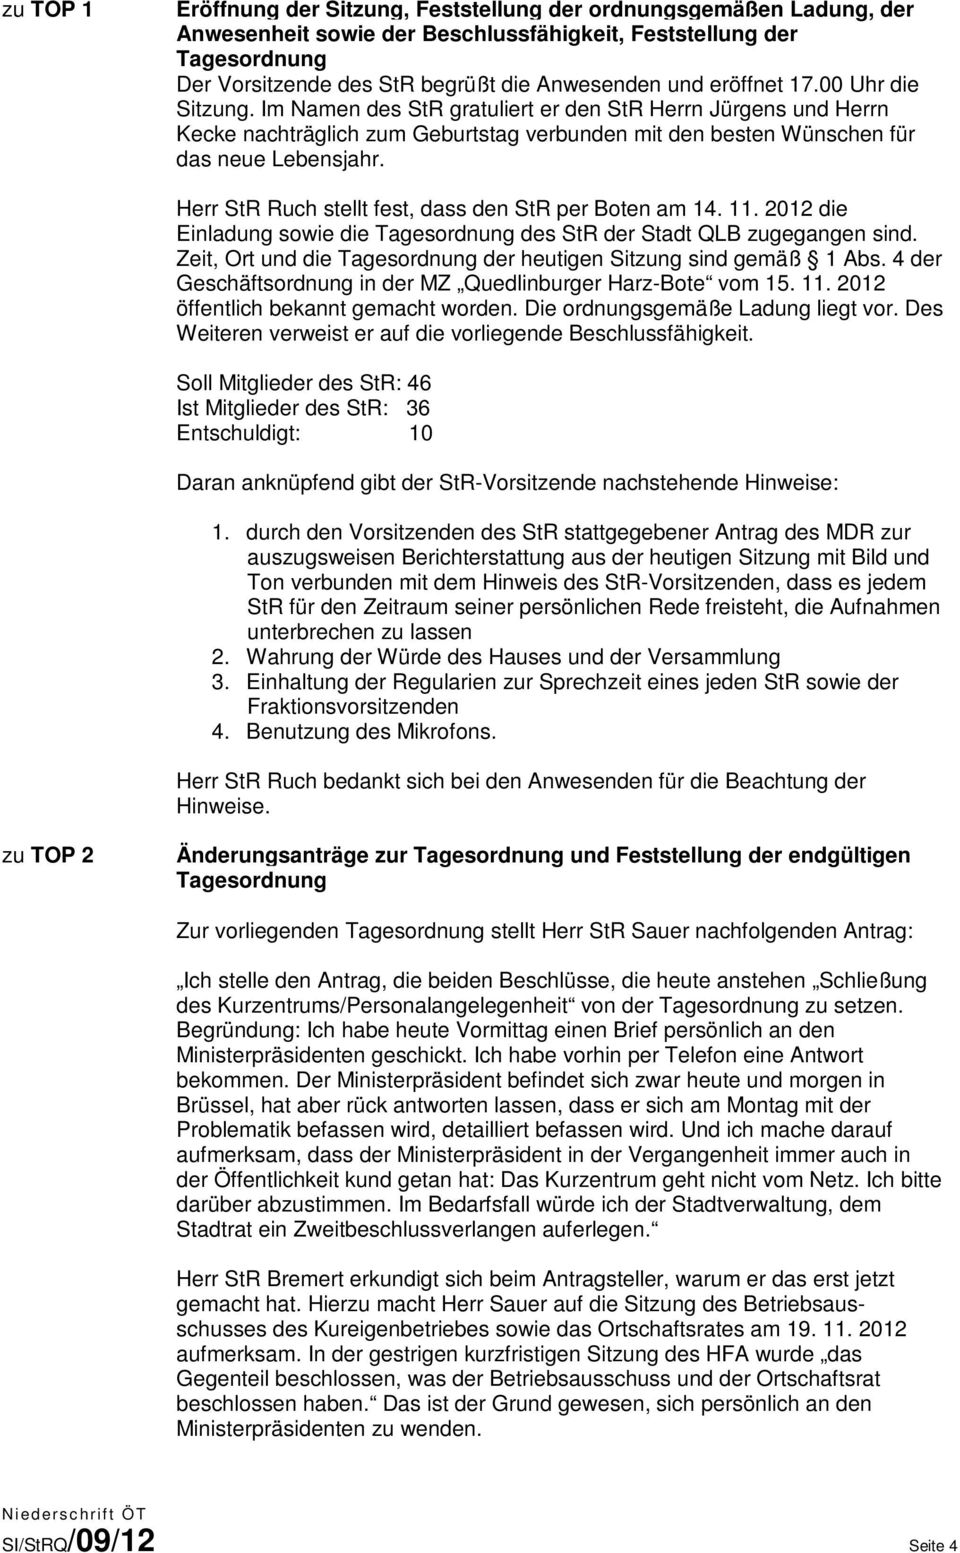 Herr StR Ruch stellt fest, dass den StR per Boten am 14. 11. 2012 die Einladung sowie die Tagesordnung des StR der Stadt QLB zugegangen sind.